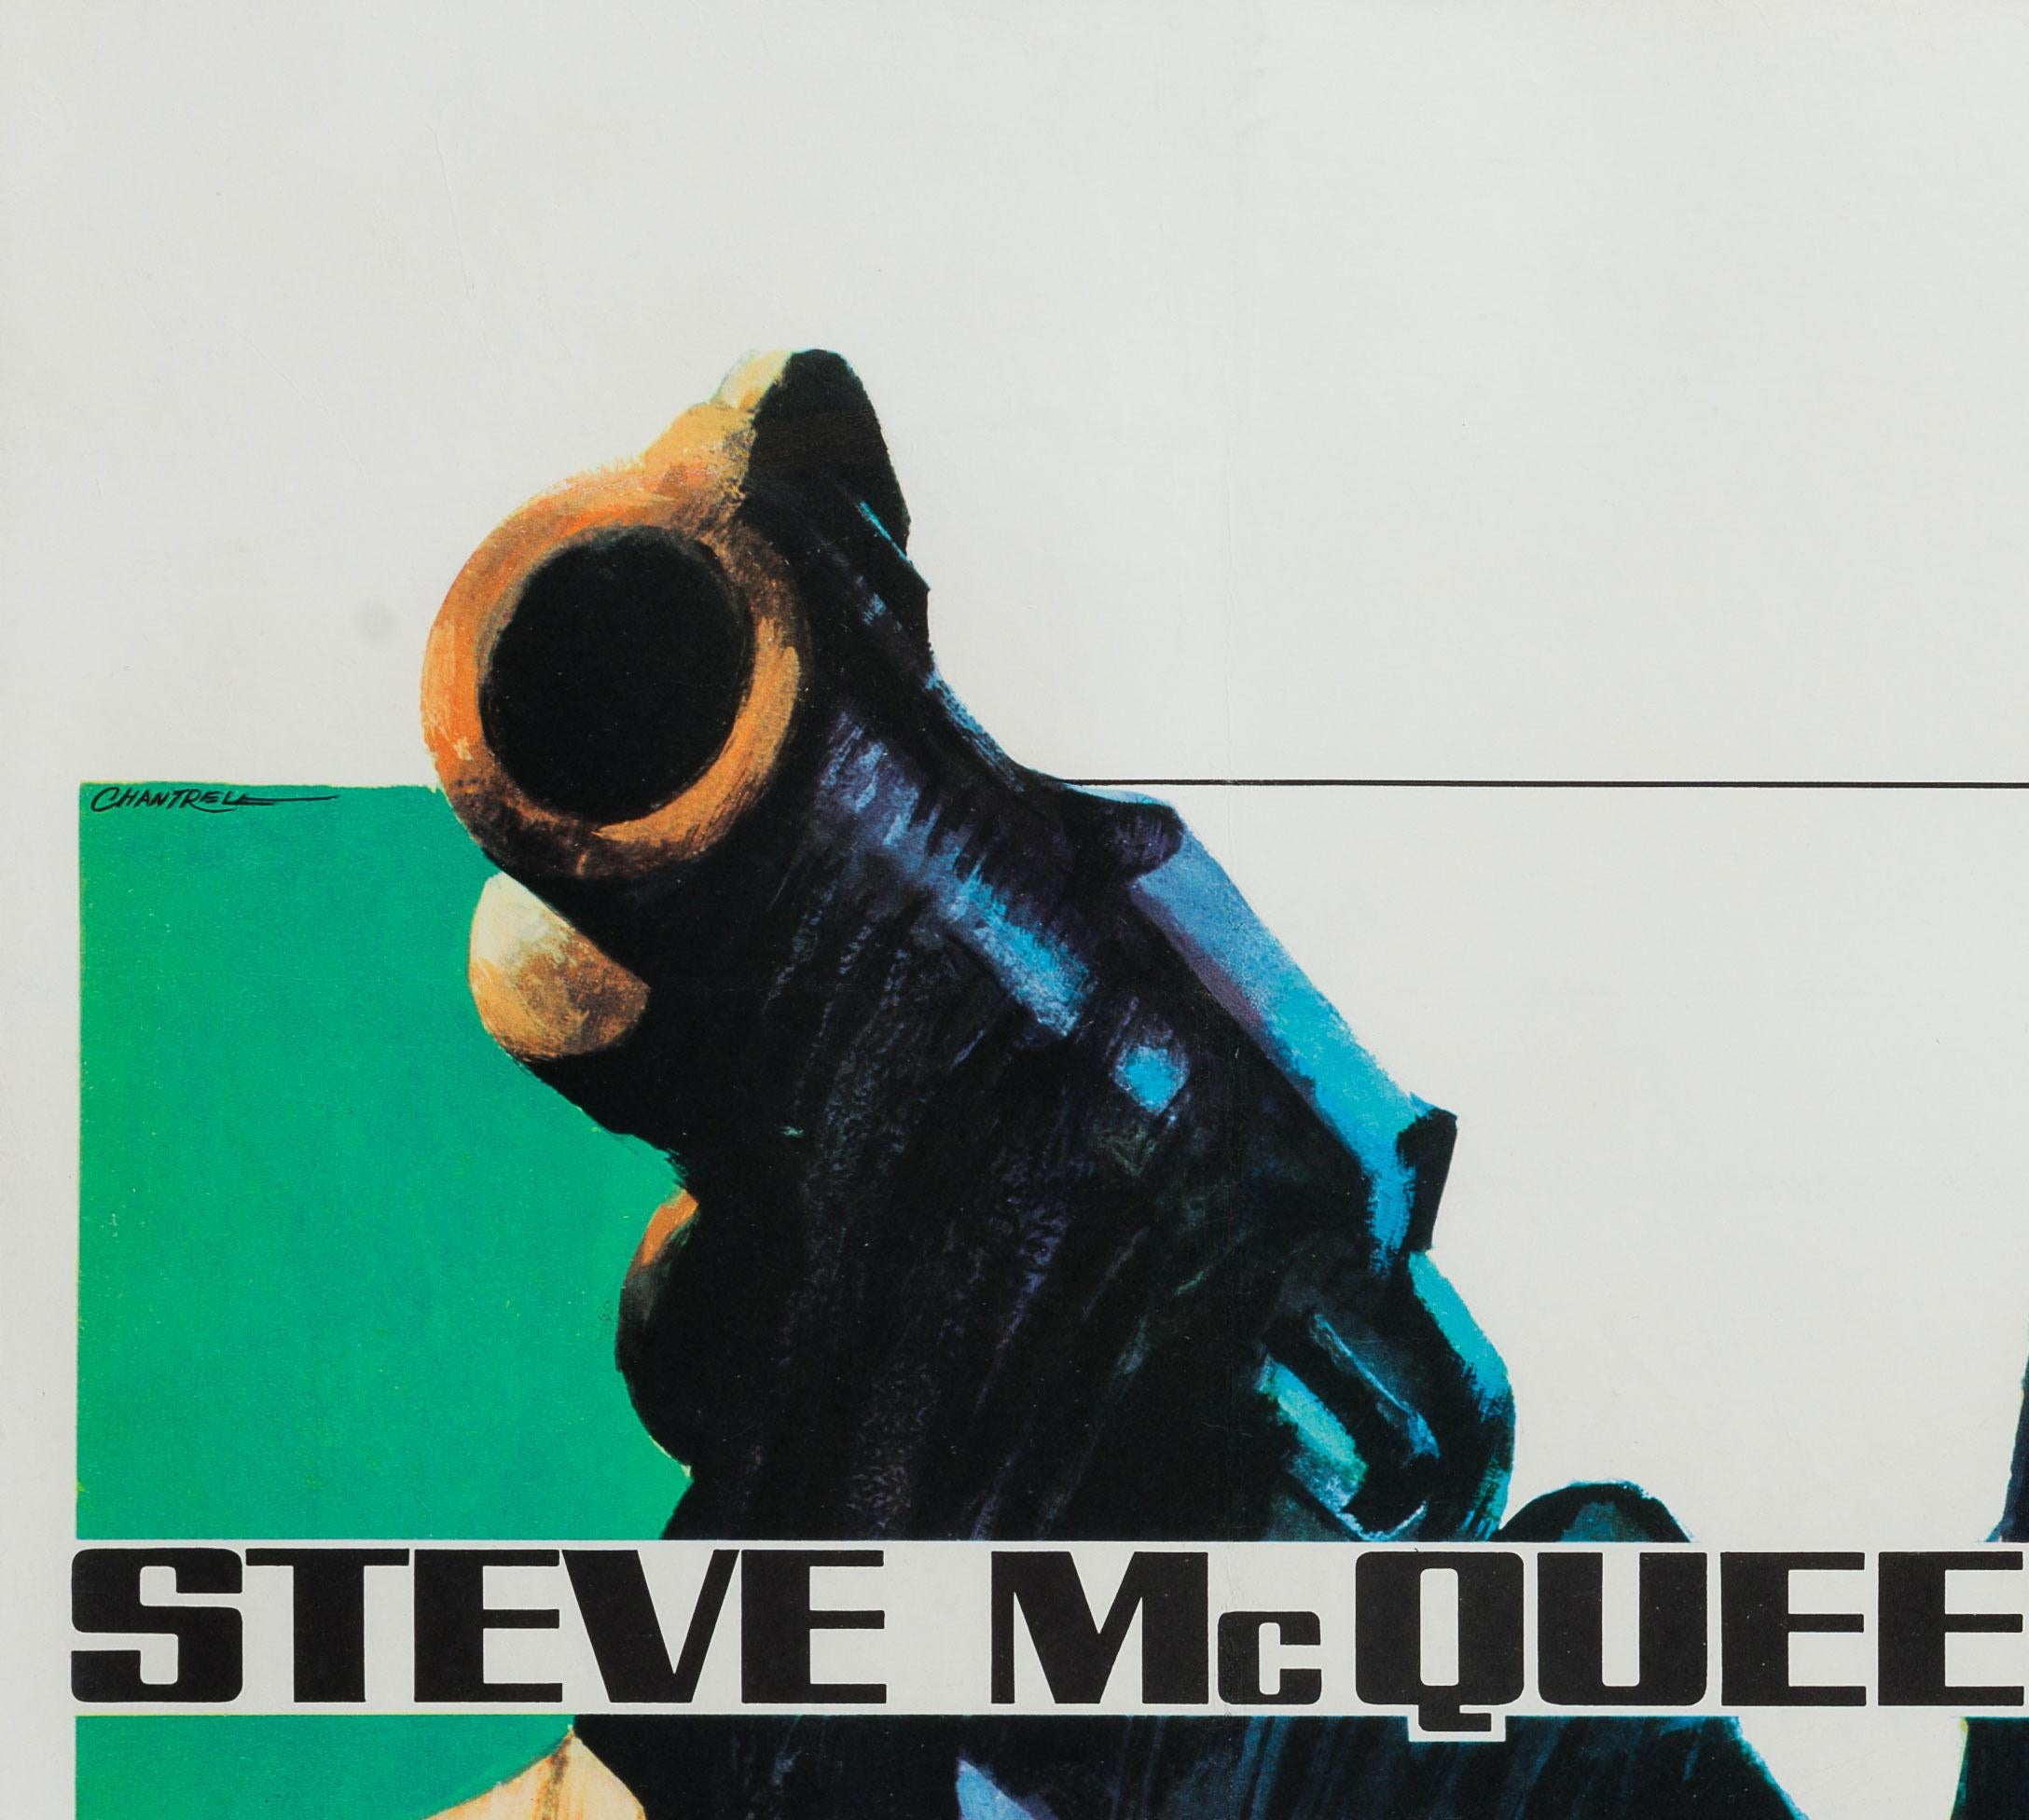 Le magnifique style vintage d'une affiche de film Quad UK pour le film Bullitt de Steve McQueen. Joli dessin de style tourbillon du prolifique designer britannique Tom Chantrell. Une très belle affiche, très rare et à collectionner. 

La taille